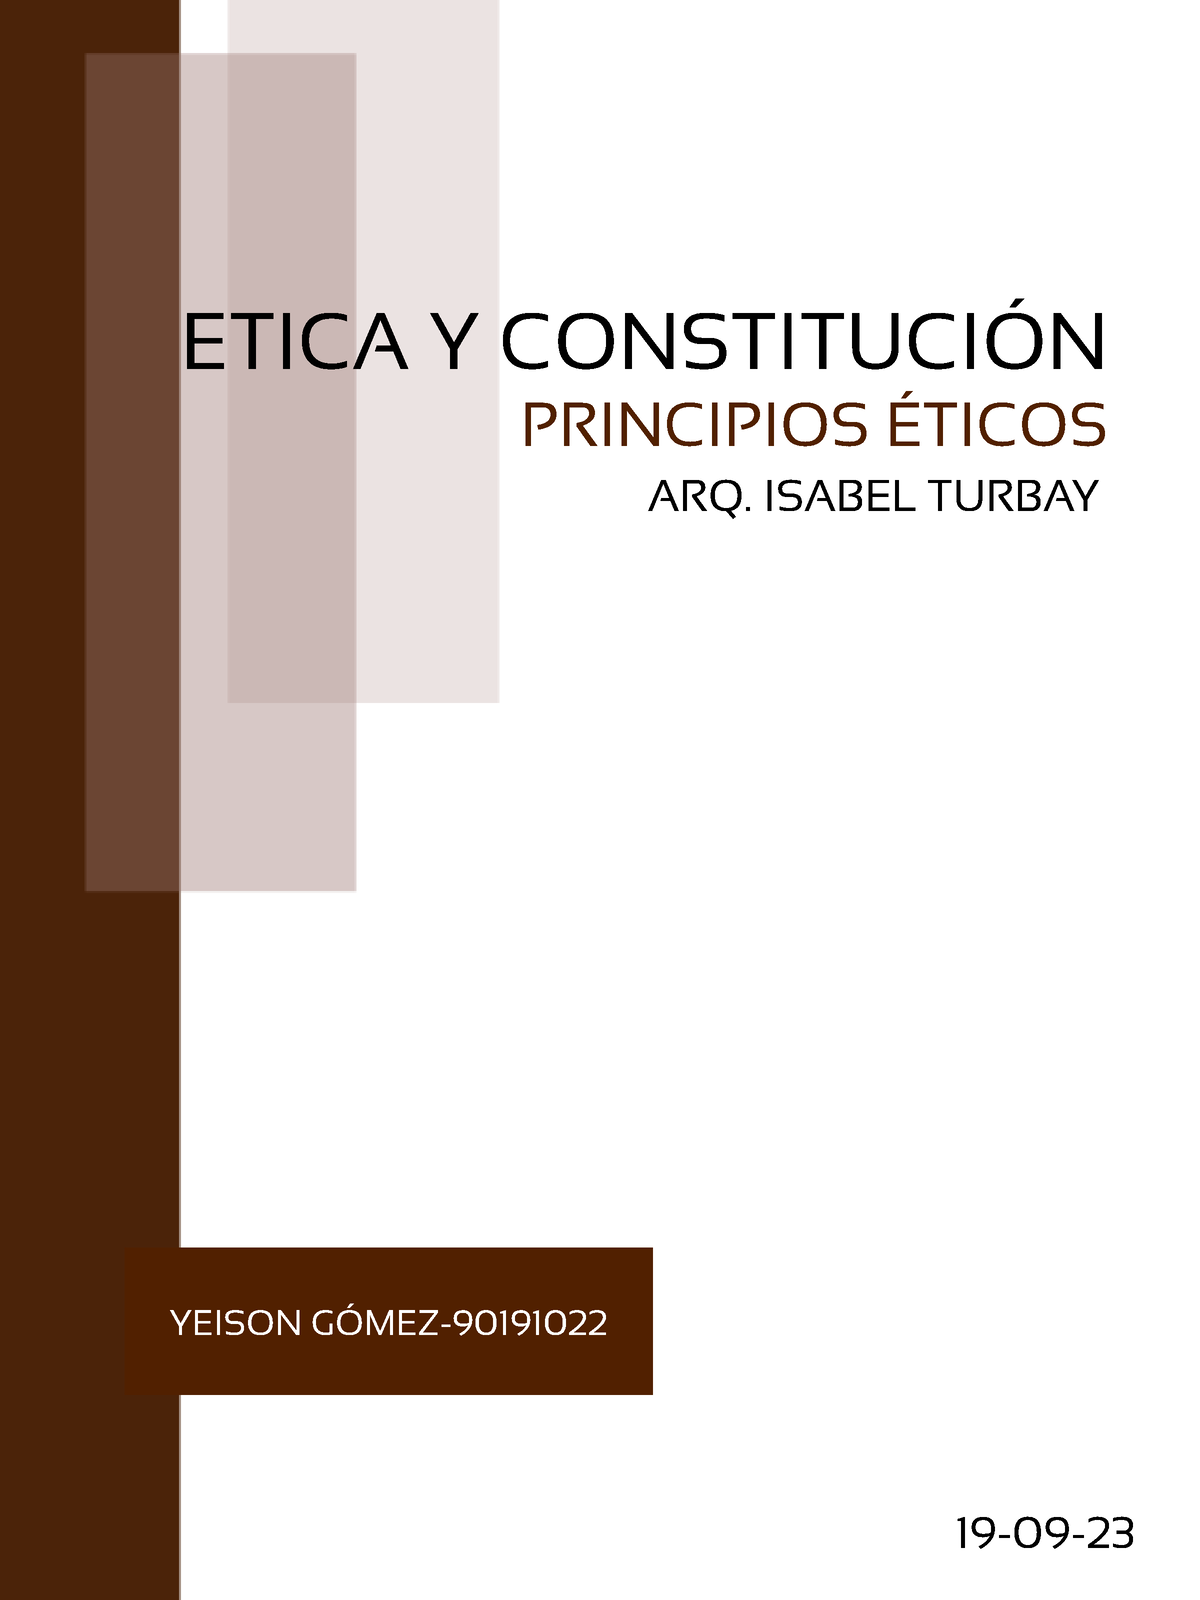 Principios Éticos Yeison Gómez Principios Éticos Etica Y ConstituciÓn Yeison GÓmez 90191022 1783